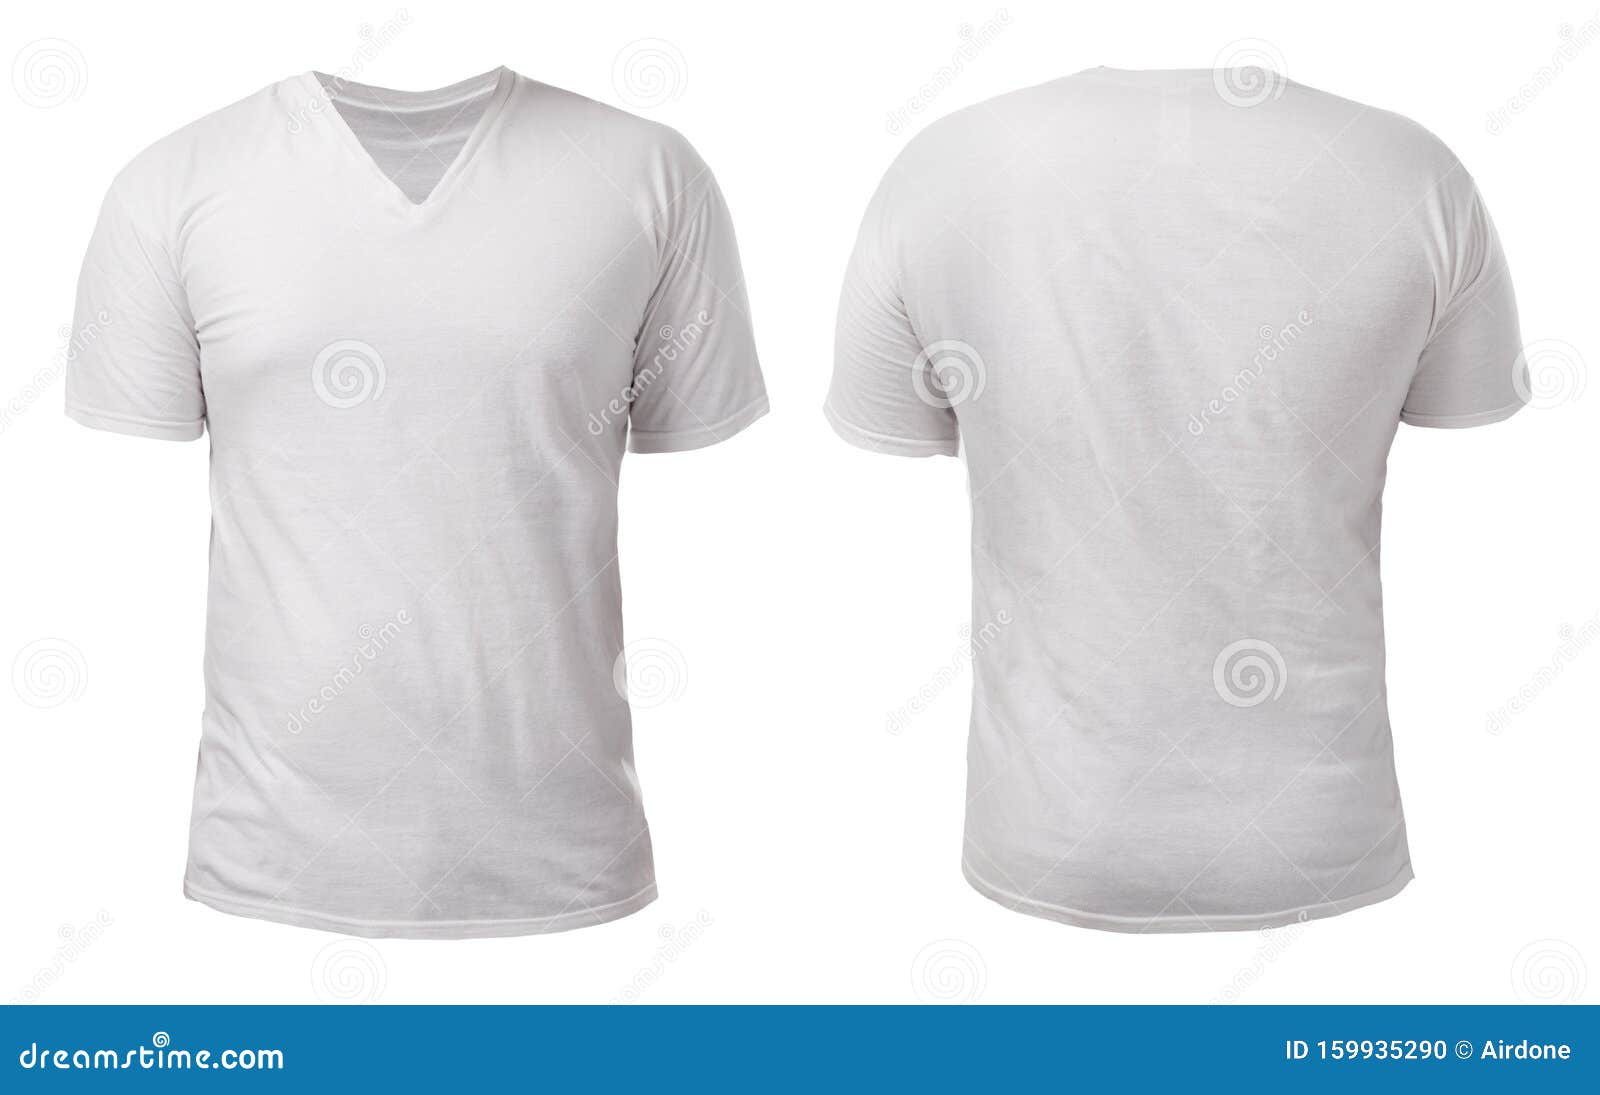 Design-Vorlage Für Ein Weißes V-Neck-Shirt Stockfoto - Bild von Intended For Blank V Neck T Shirt Template